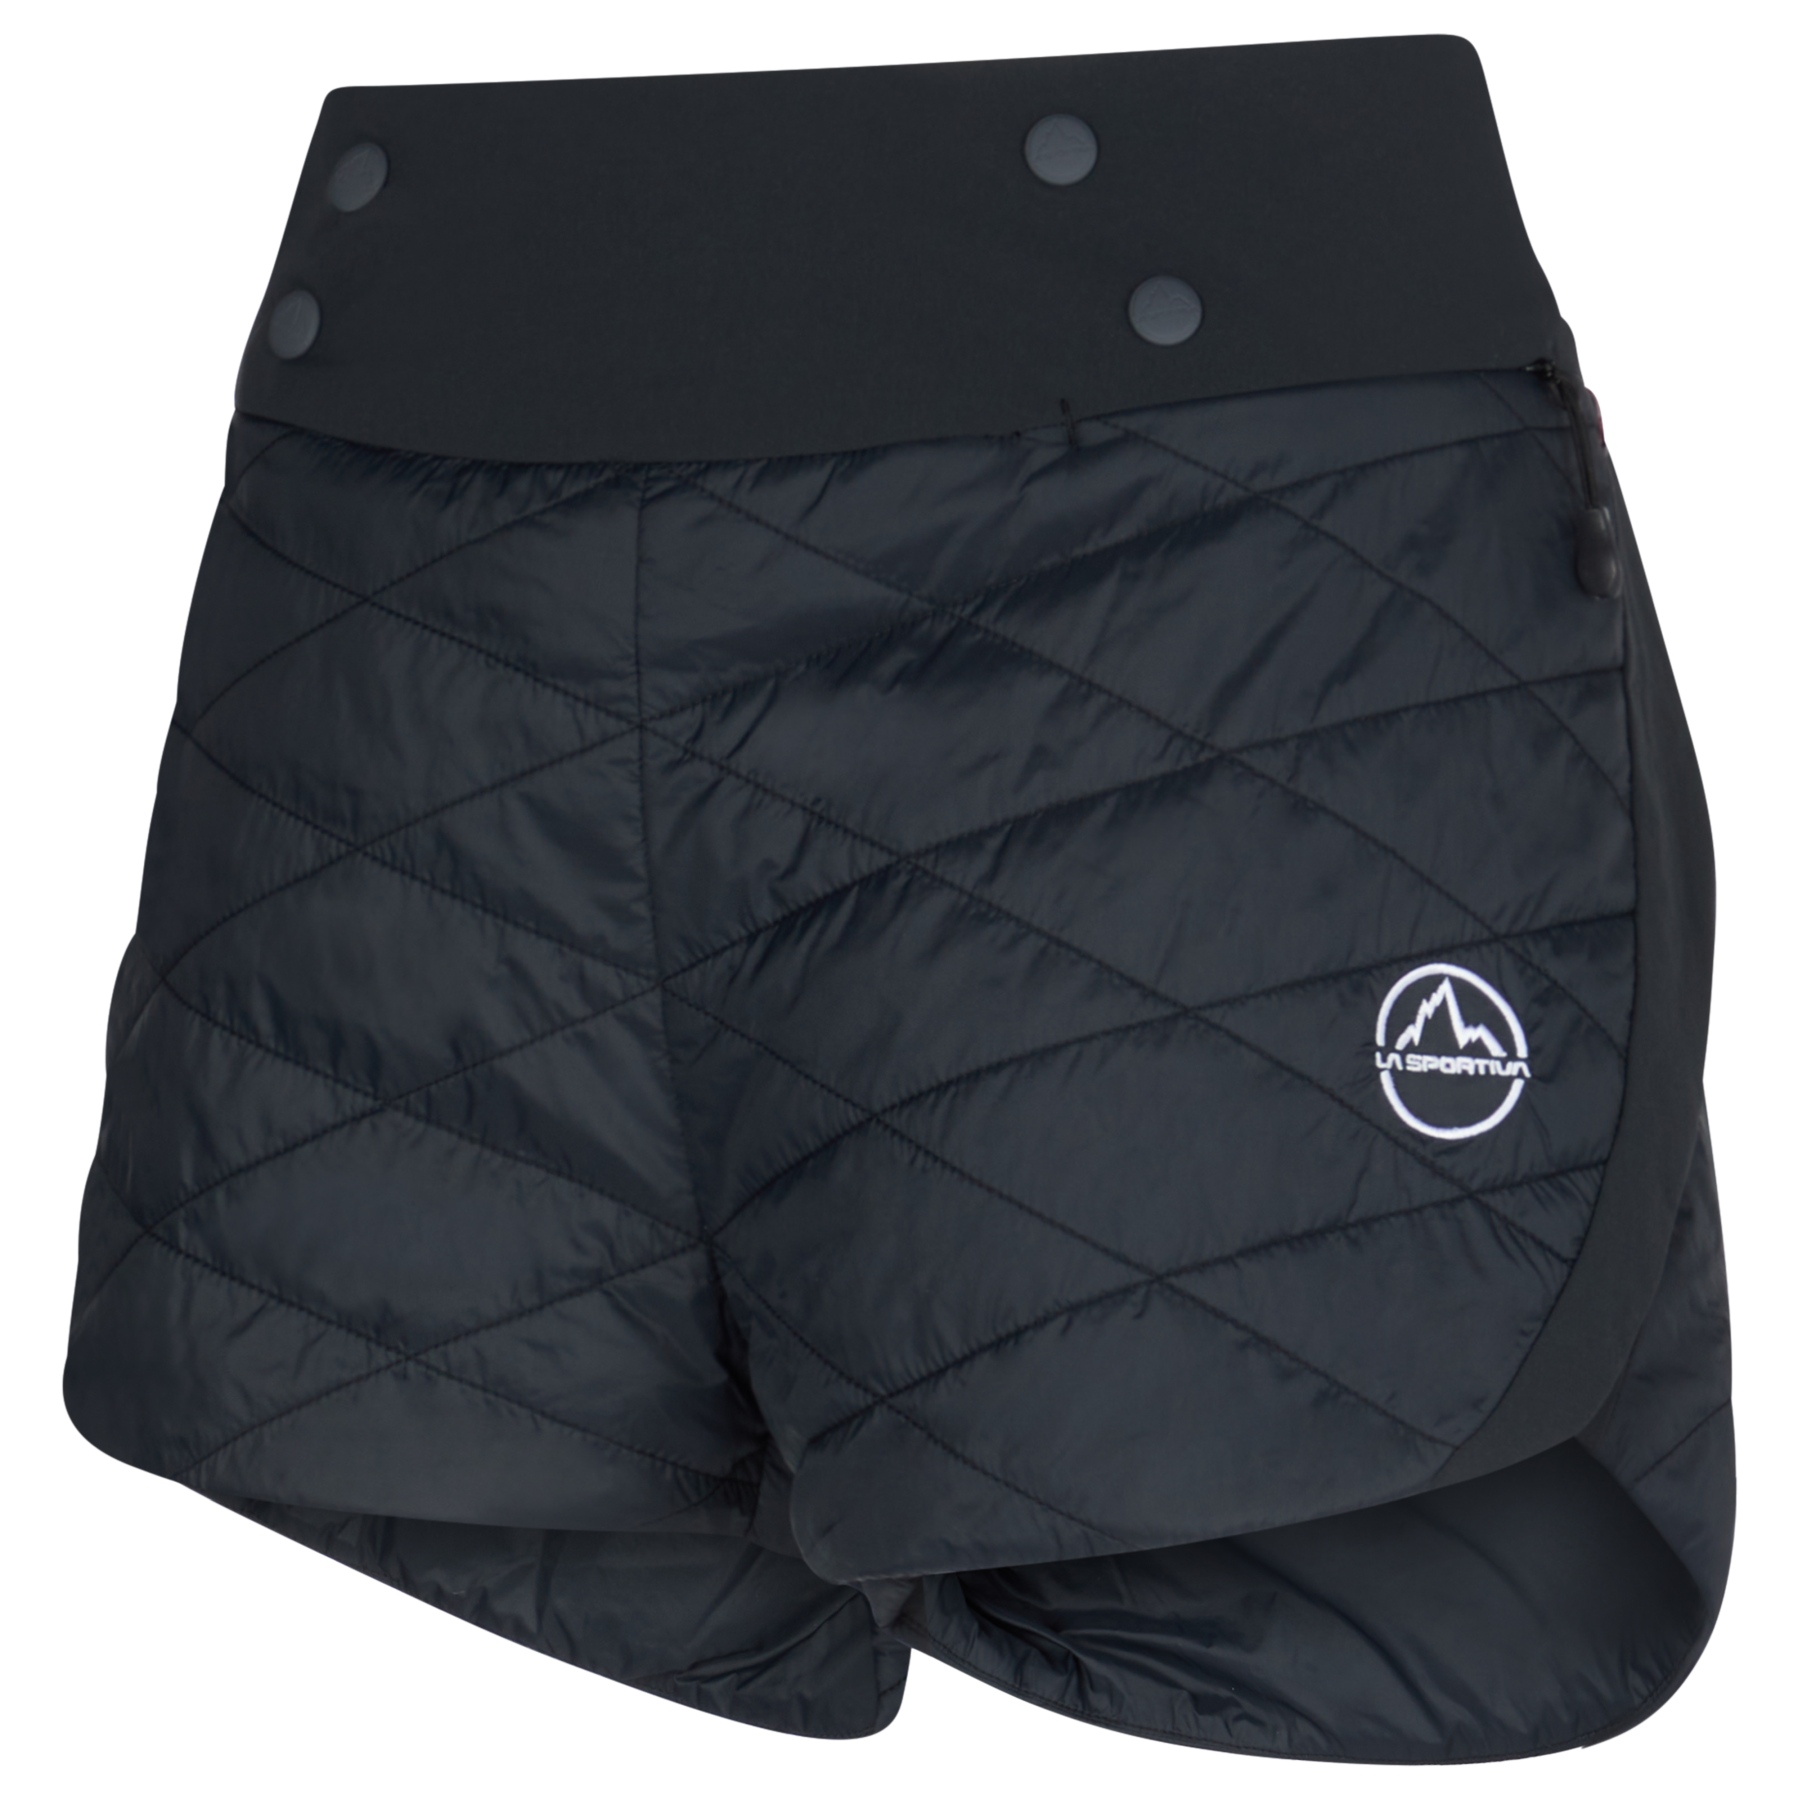 Produktbild von La Sportiva Parallel Primaloft Shorts Damen - Schwarz/Weiß